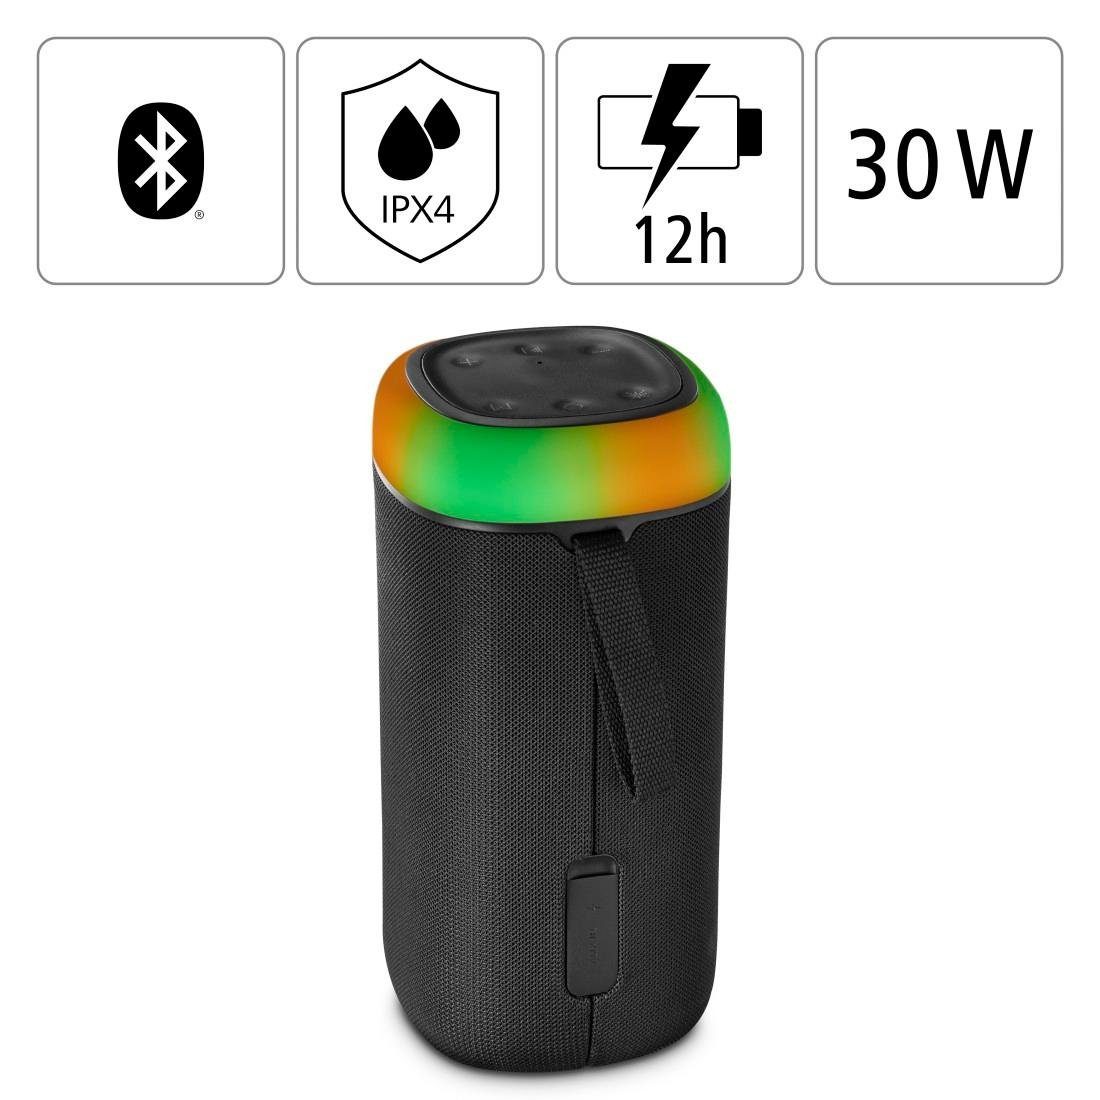 360ᵒ Sound) schwarz Xtra LED Box Sound Bass (Freisprechanlage,Xtra Shine Bluetooth-Lautsprecher spritzwassergeschützt Bluetooth 2.0 Bass,360ᵒ Hama